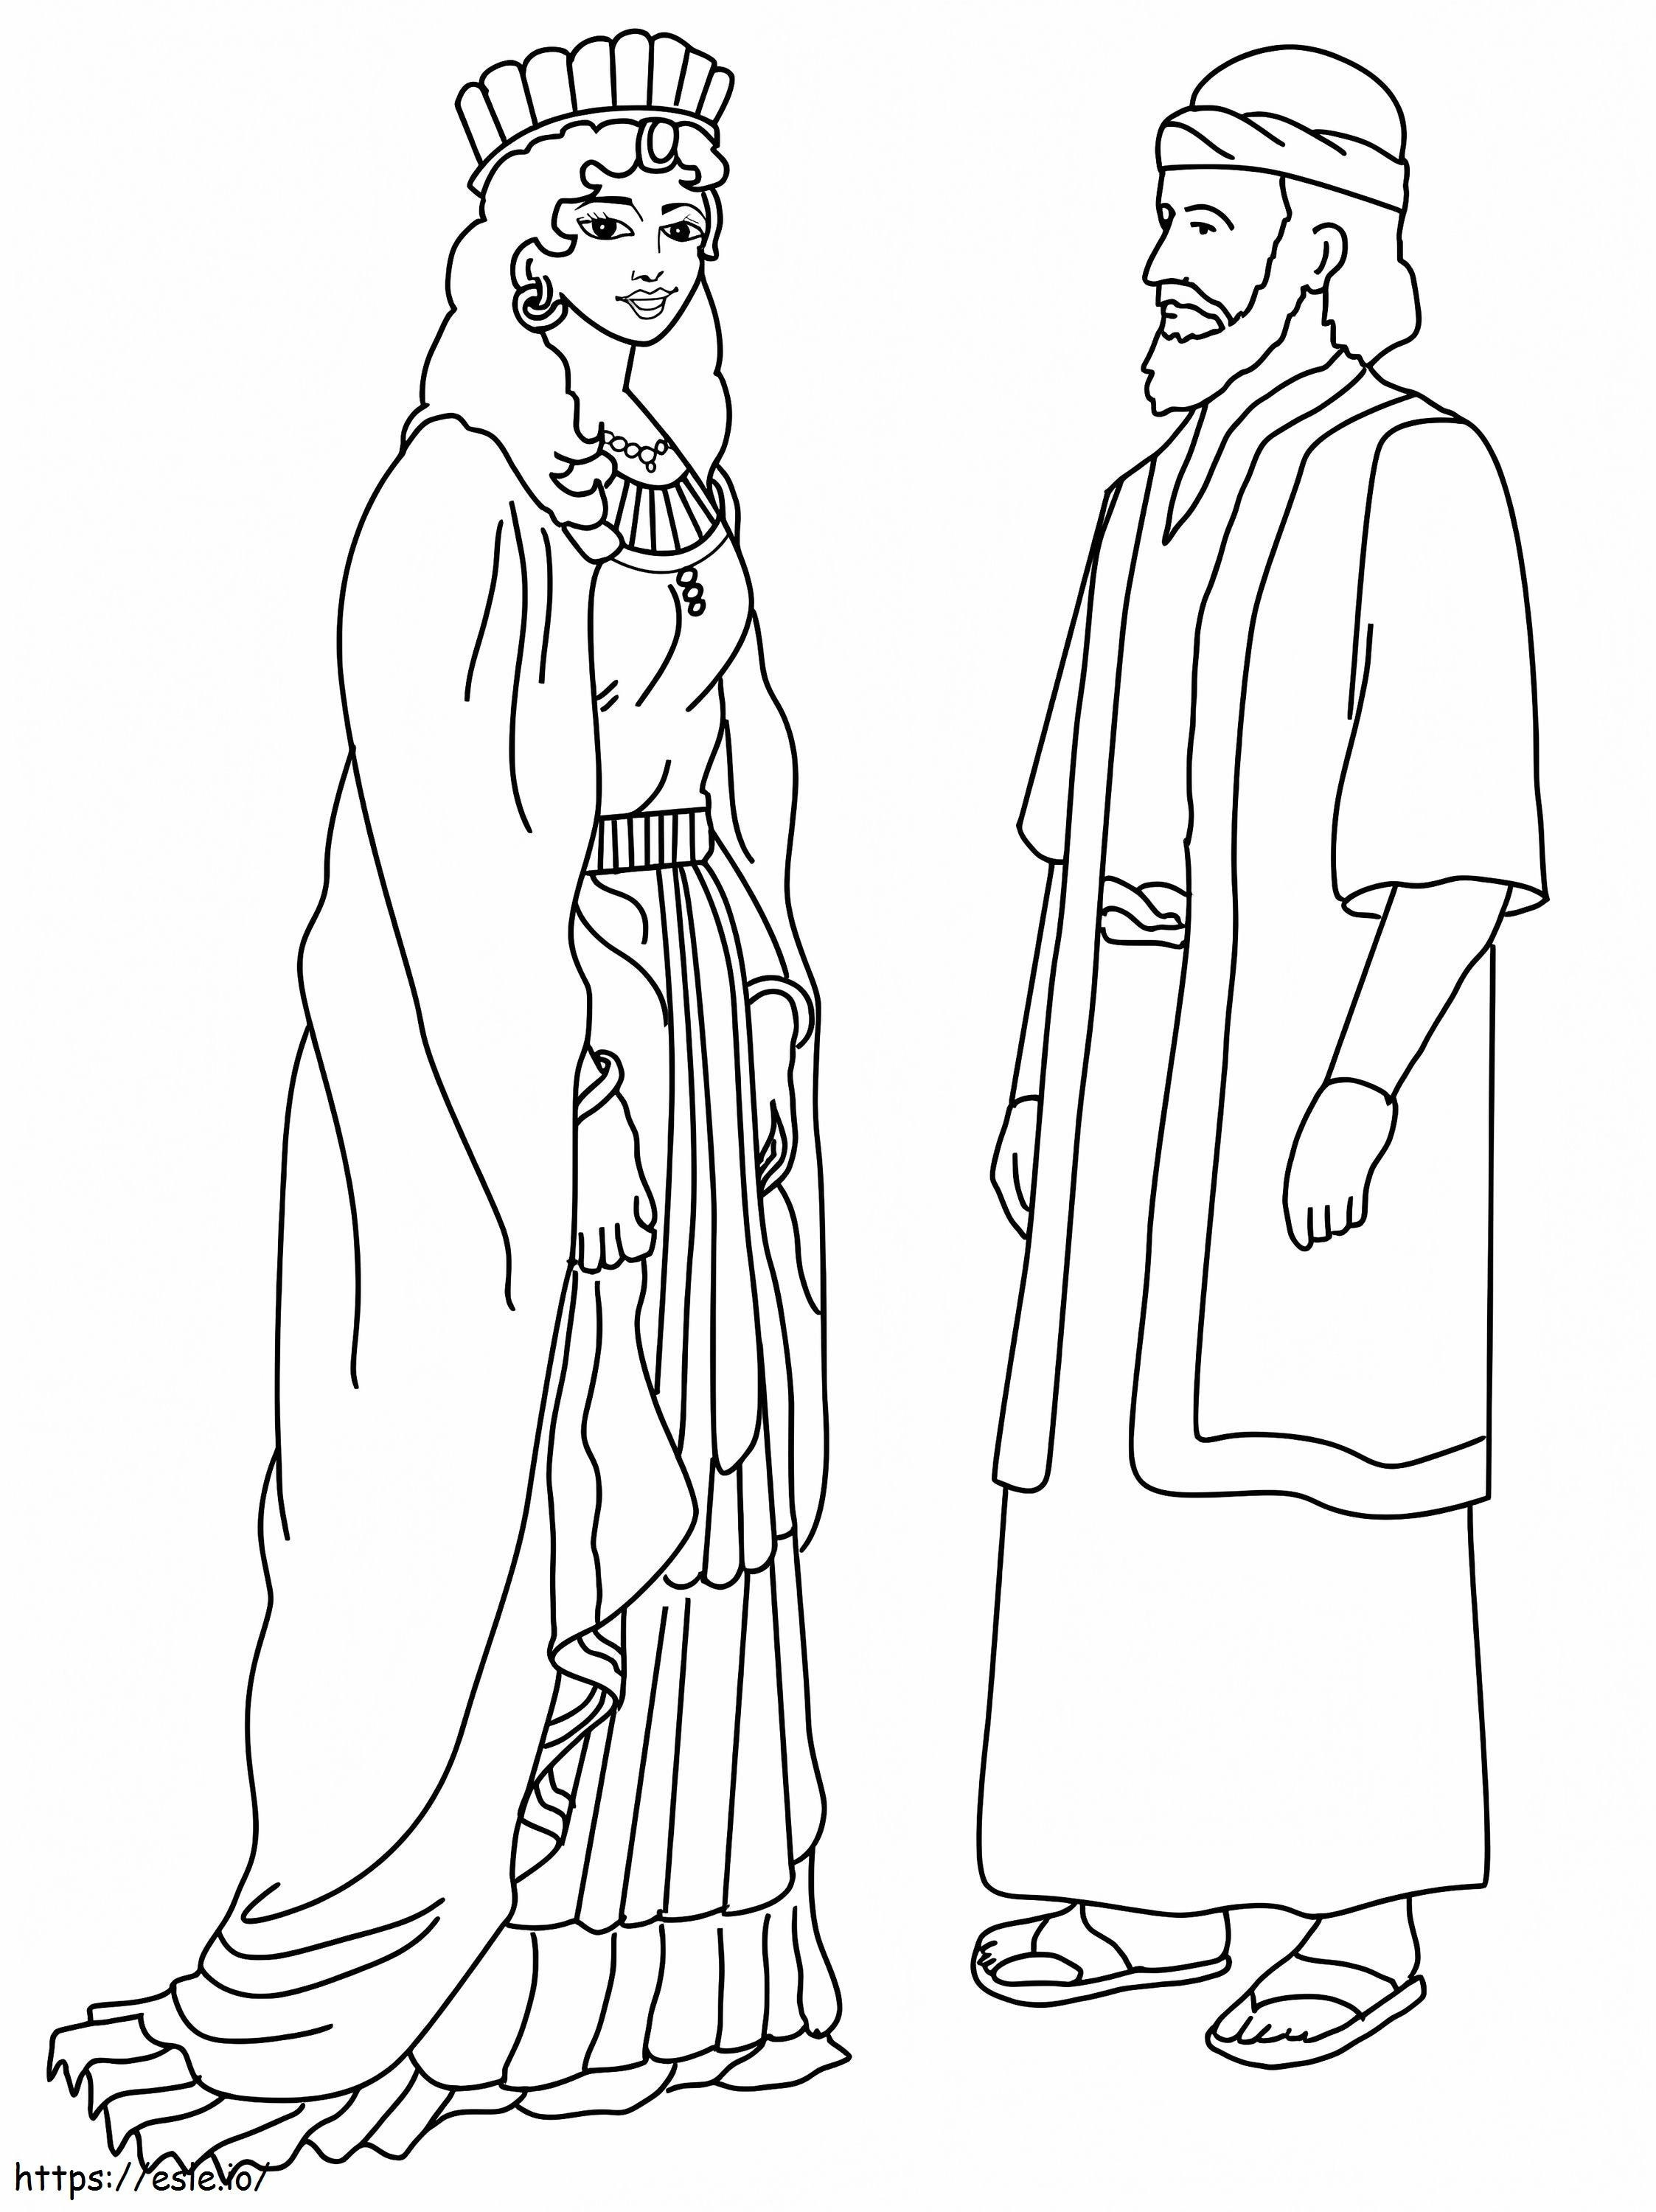 Königin Esther und Mordechai ausmalbilder